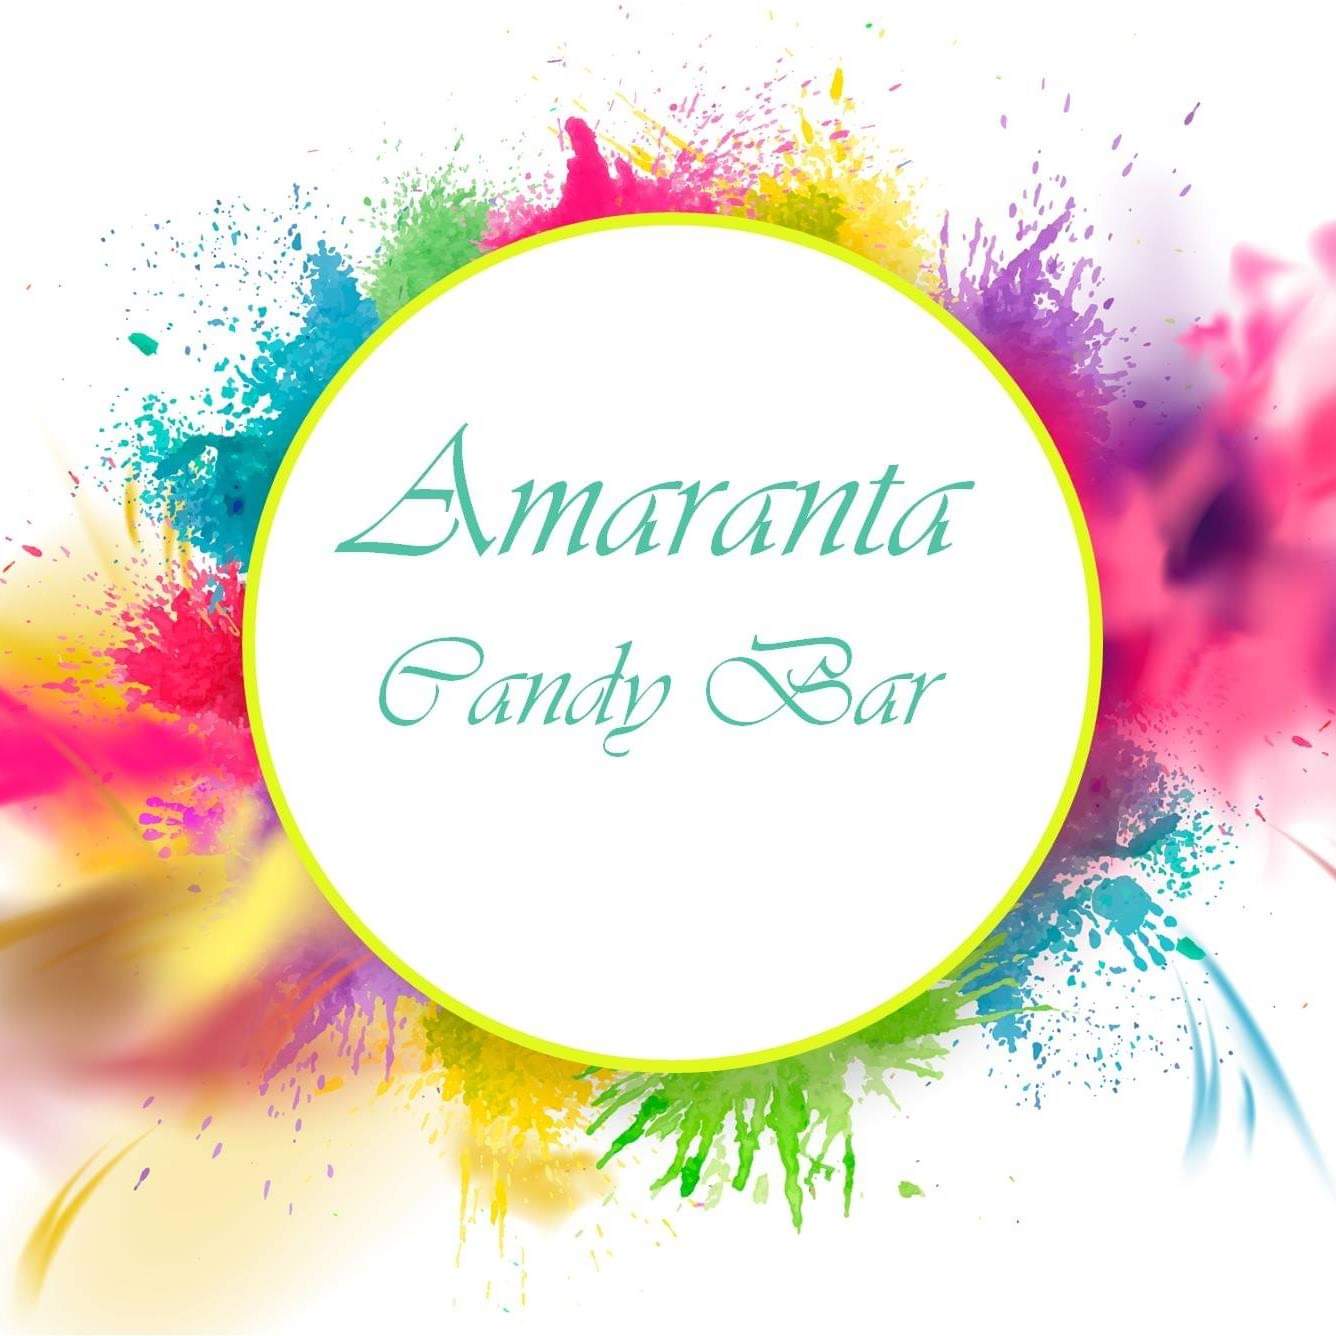 Amaranta Candy Bar